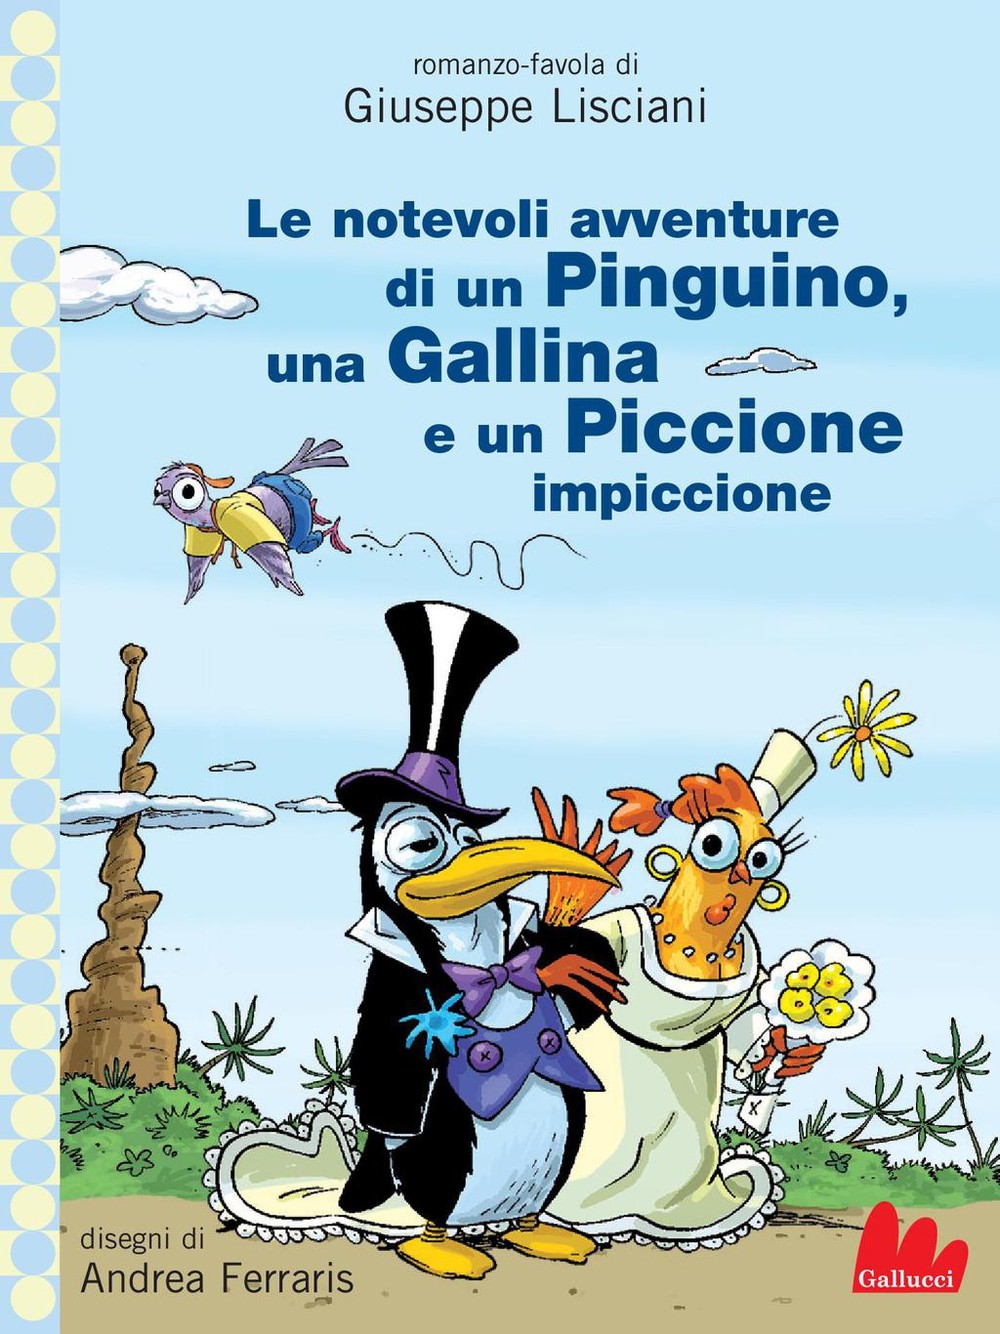 Le notevoli avventure di un Pinguino - Librerie.coop